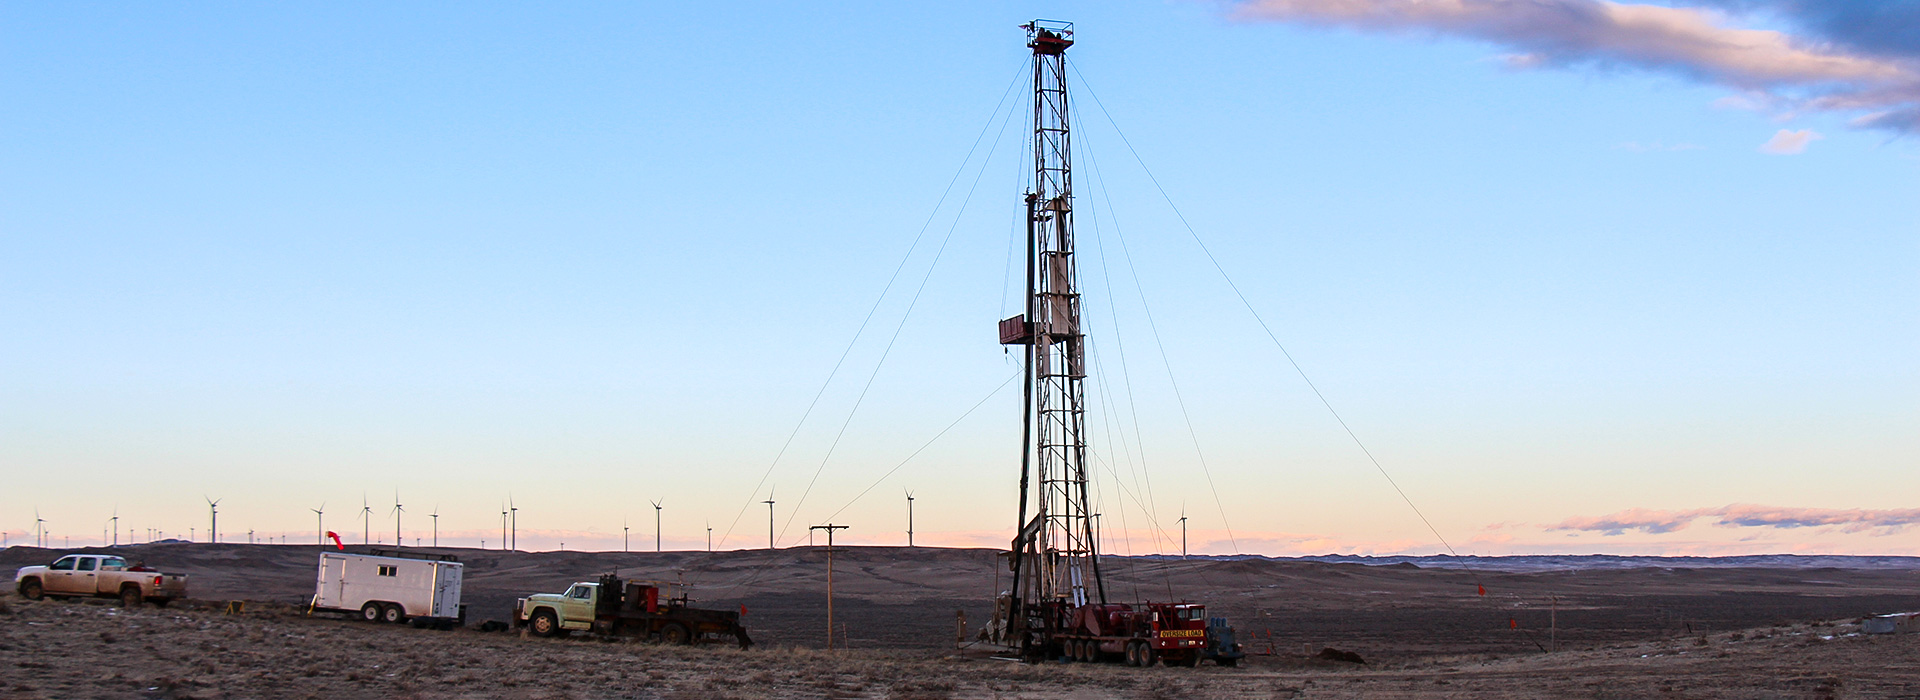 Oil Derrick outside Casper, Wyoming at Sunset